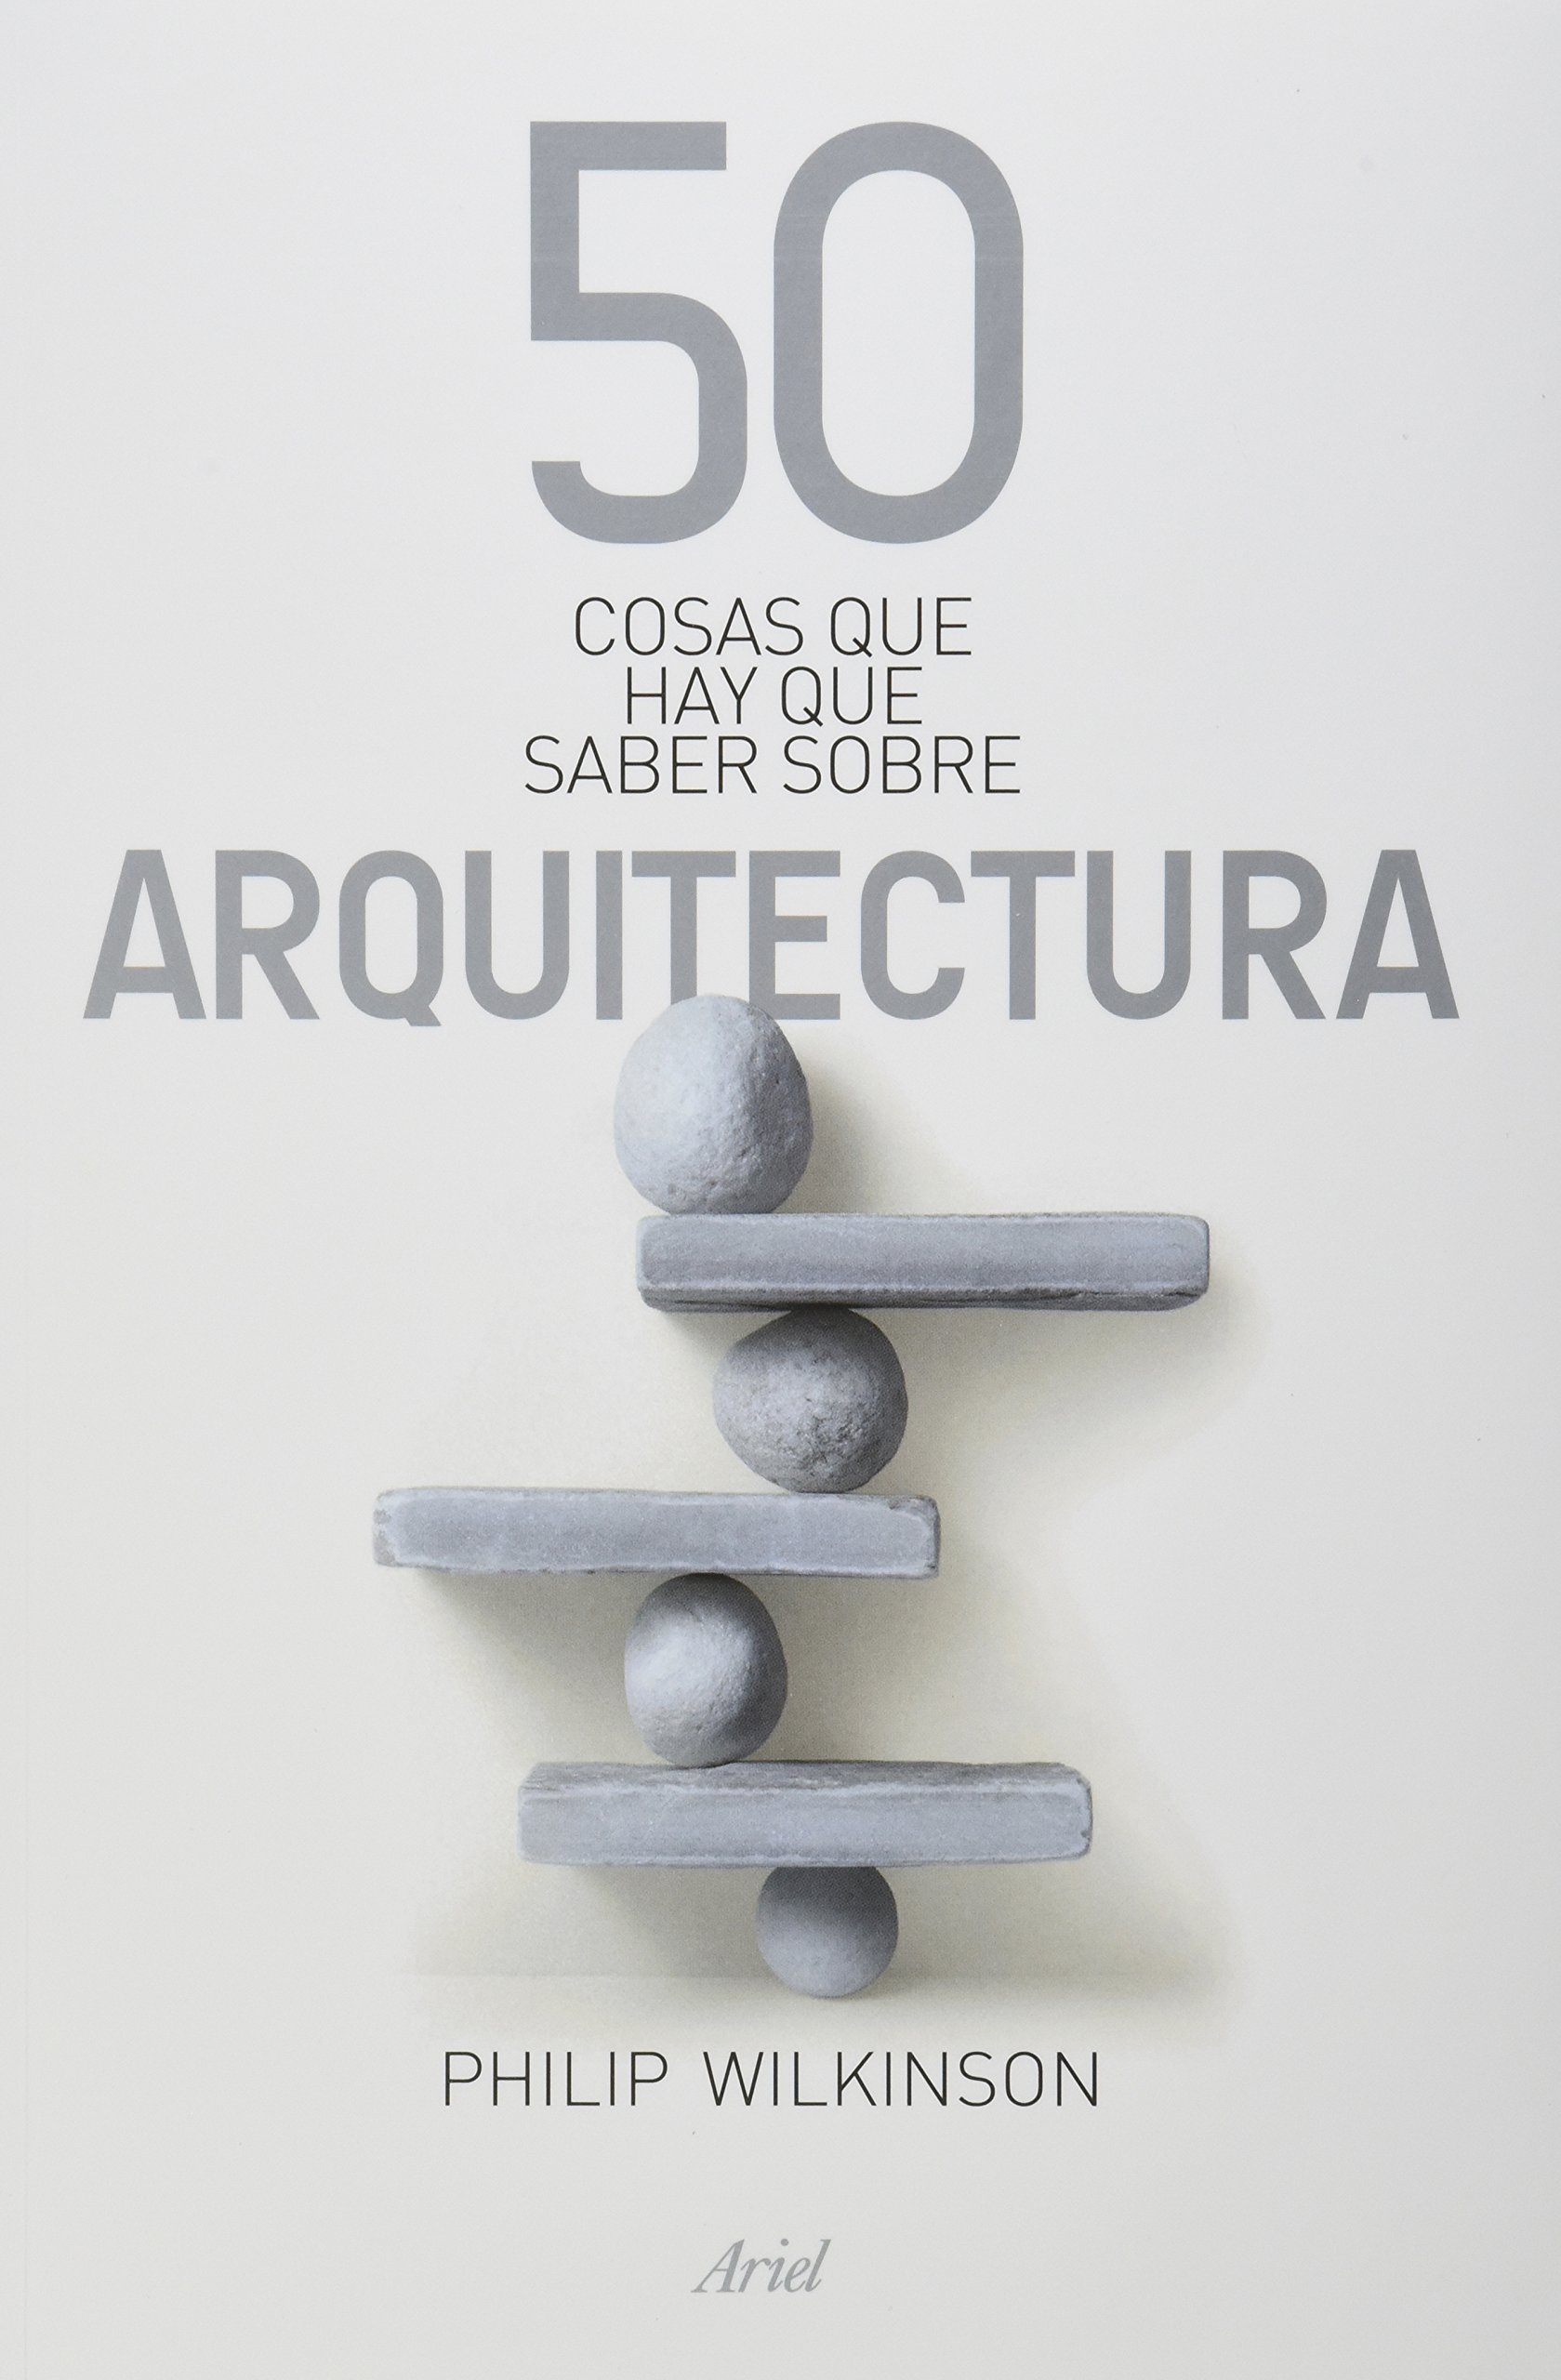 El libro 50 Cosas que hay que Saber Sobre Arquitectura explica elementos esenciales de dicha disciplina para comprenderla aunque no seas experto.